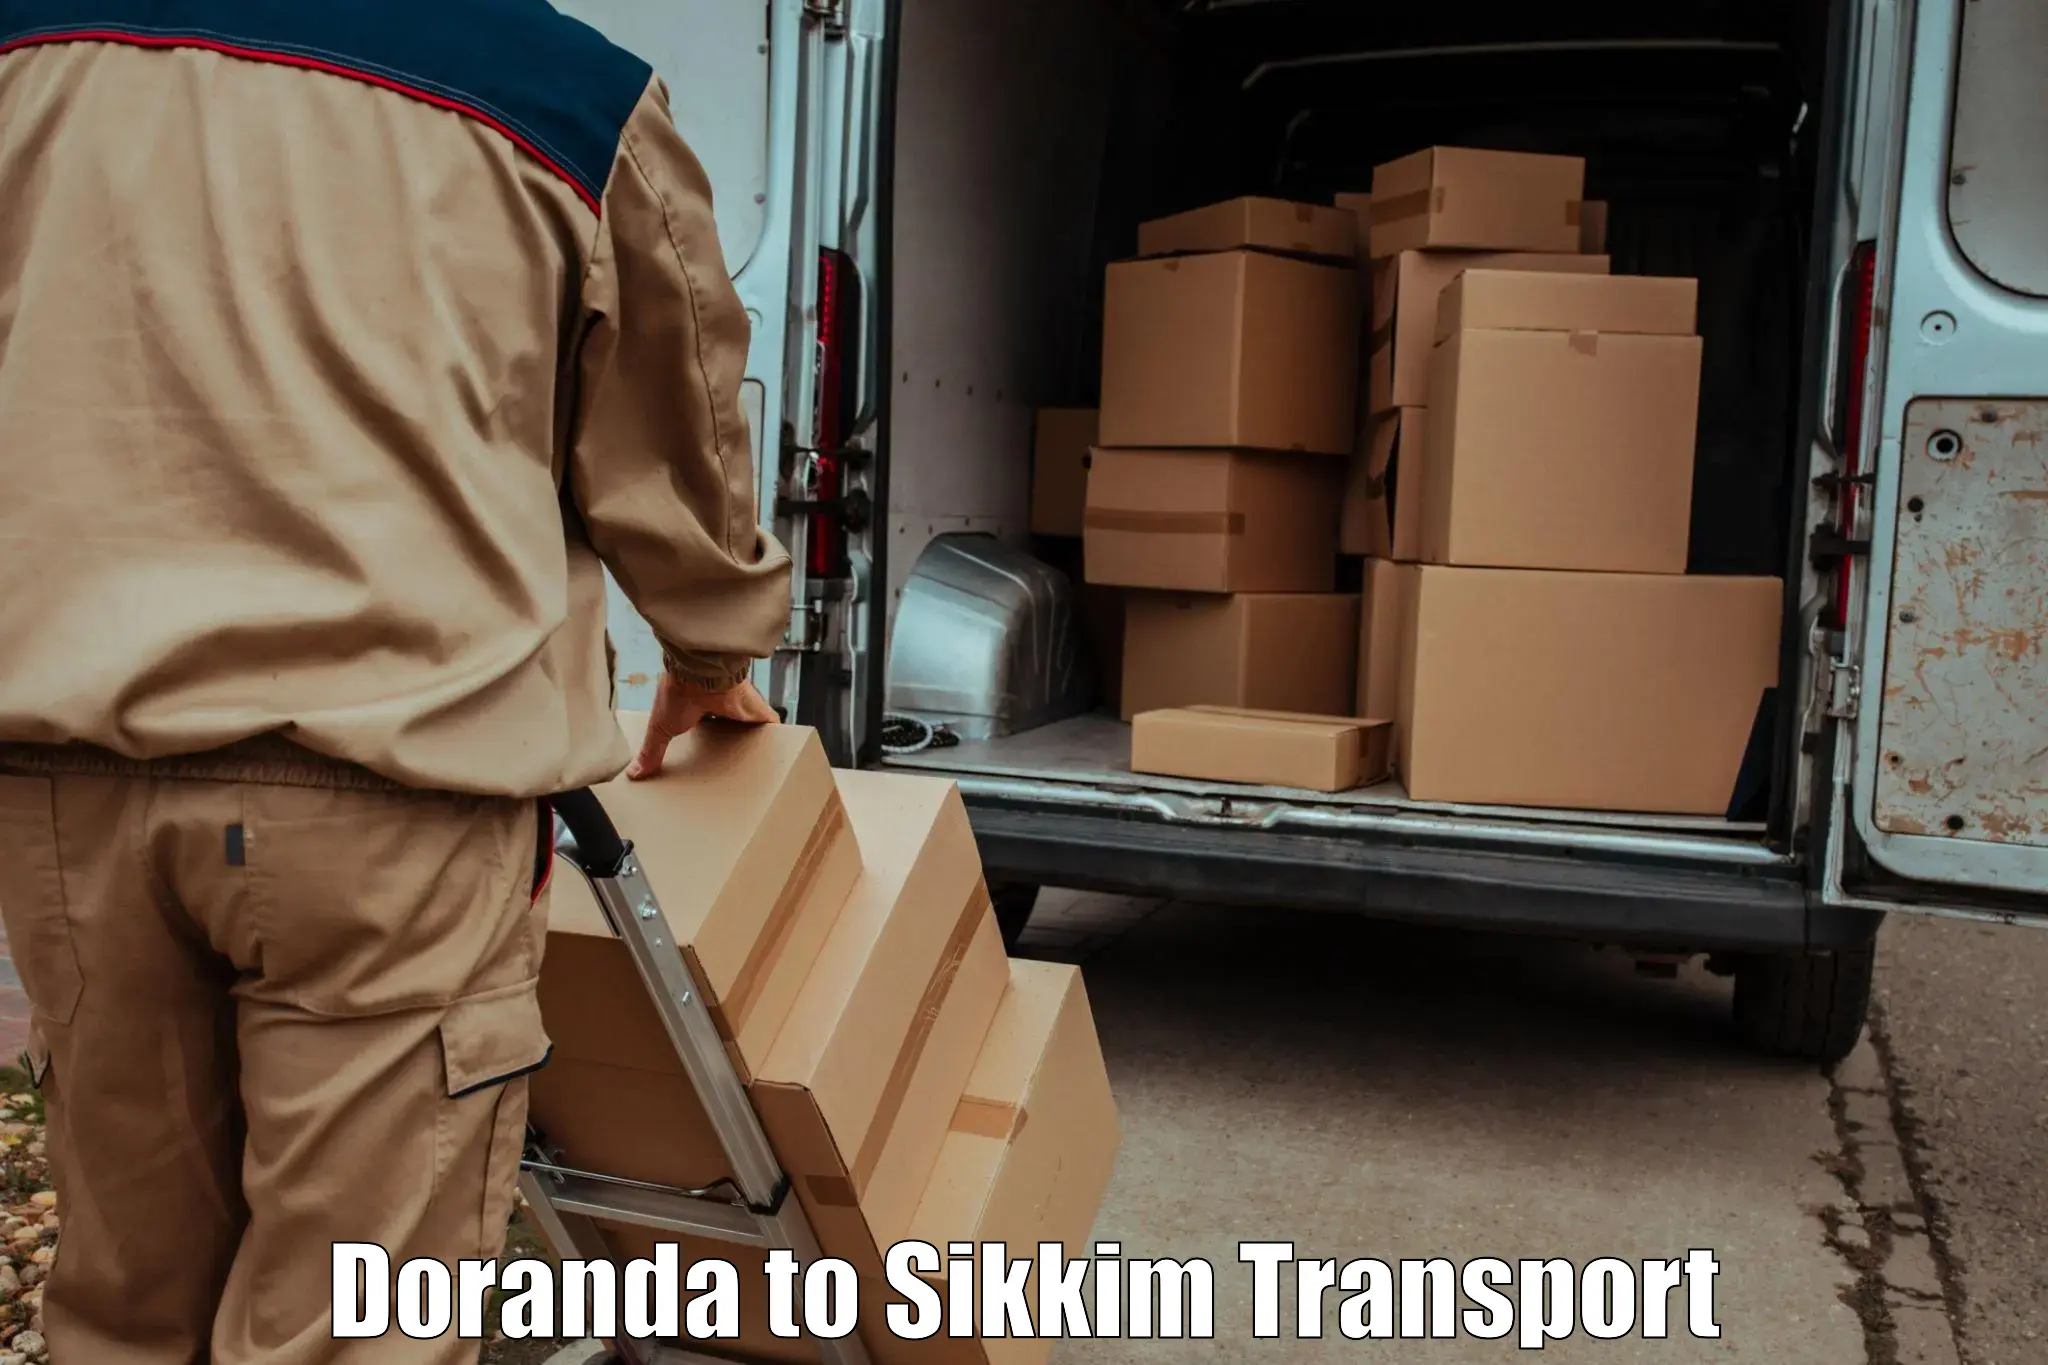 Pick up transport service Doranda to Sikkim